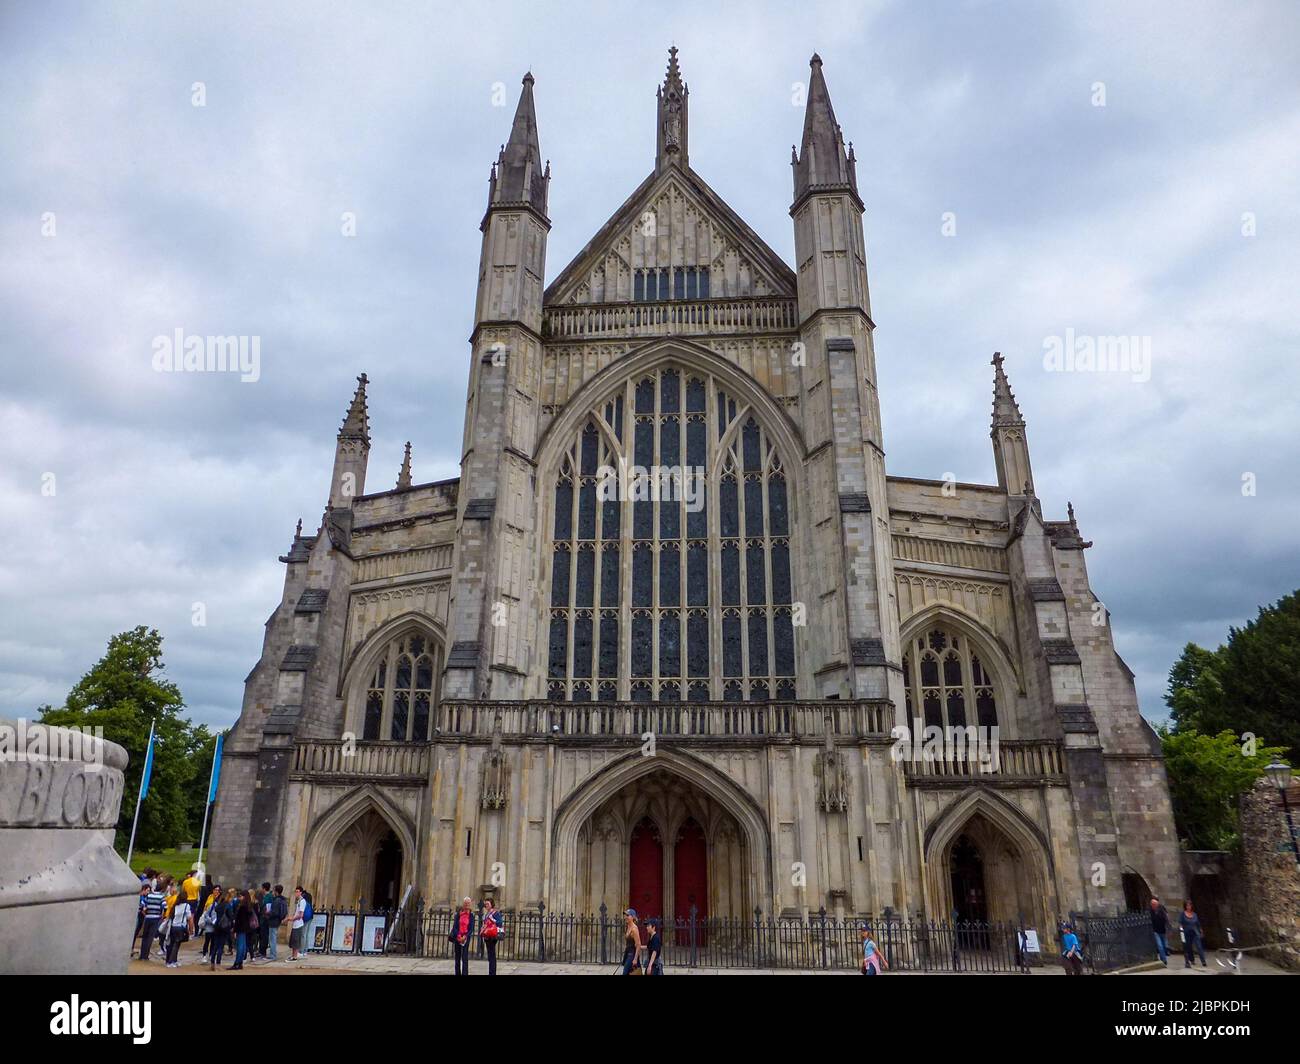 In Winchester, Hampshire, England, Großbritannien, erhebt sich die mittelalterliche Winchester Cathedral unter einem bewölkten Himmel über Touristen. Stockfoto